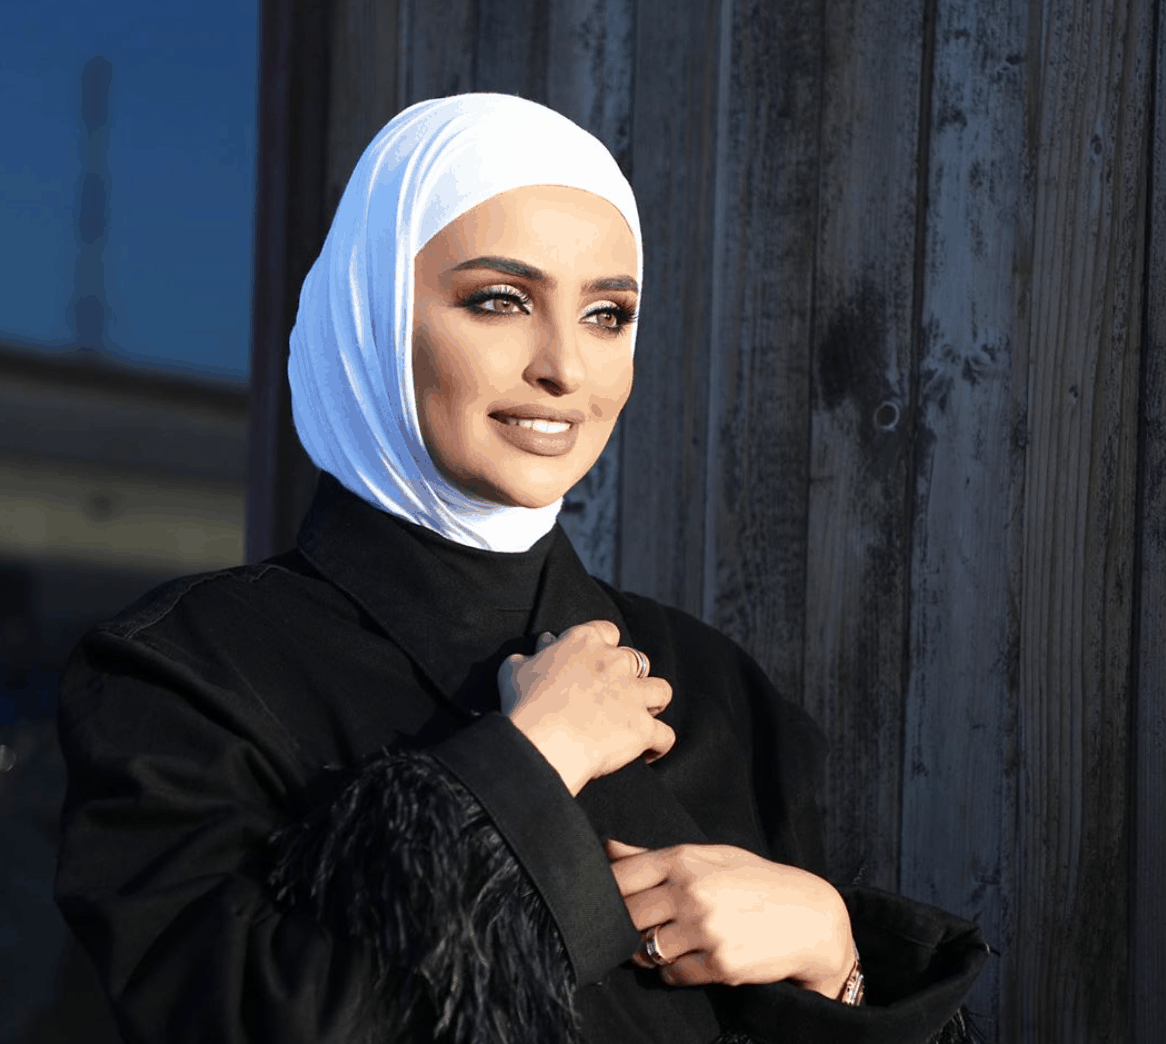 الحجاب في رمضان على طريقة الفاشونيستات